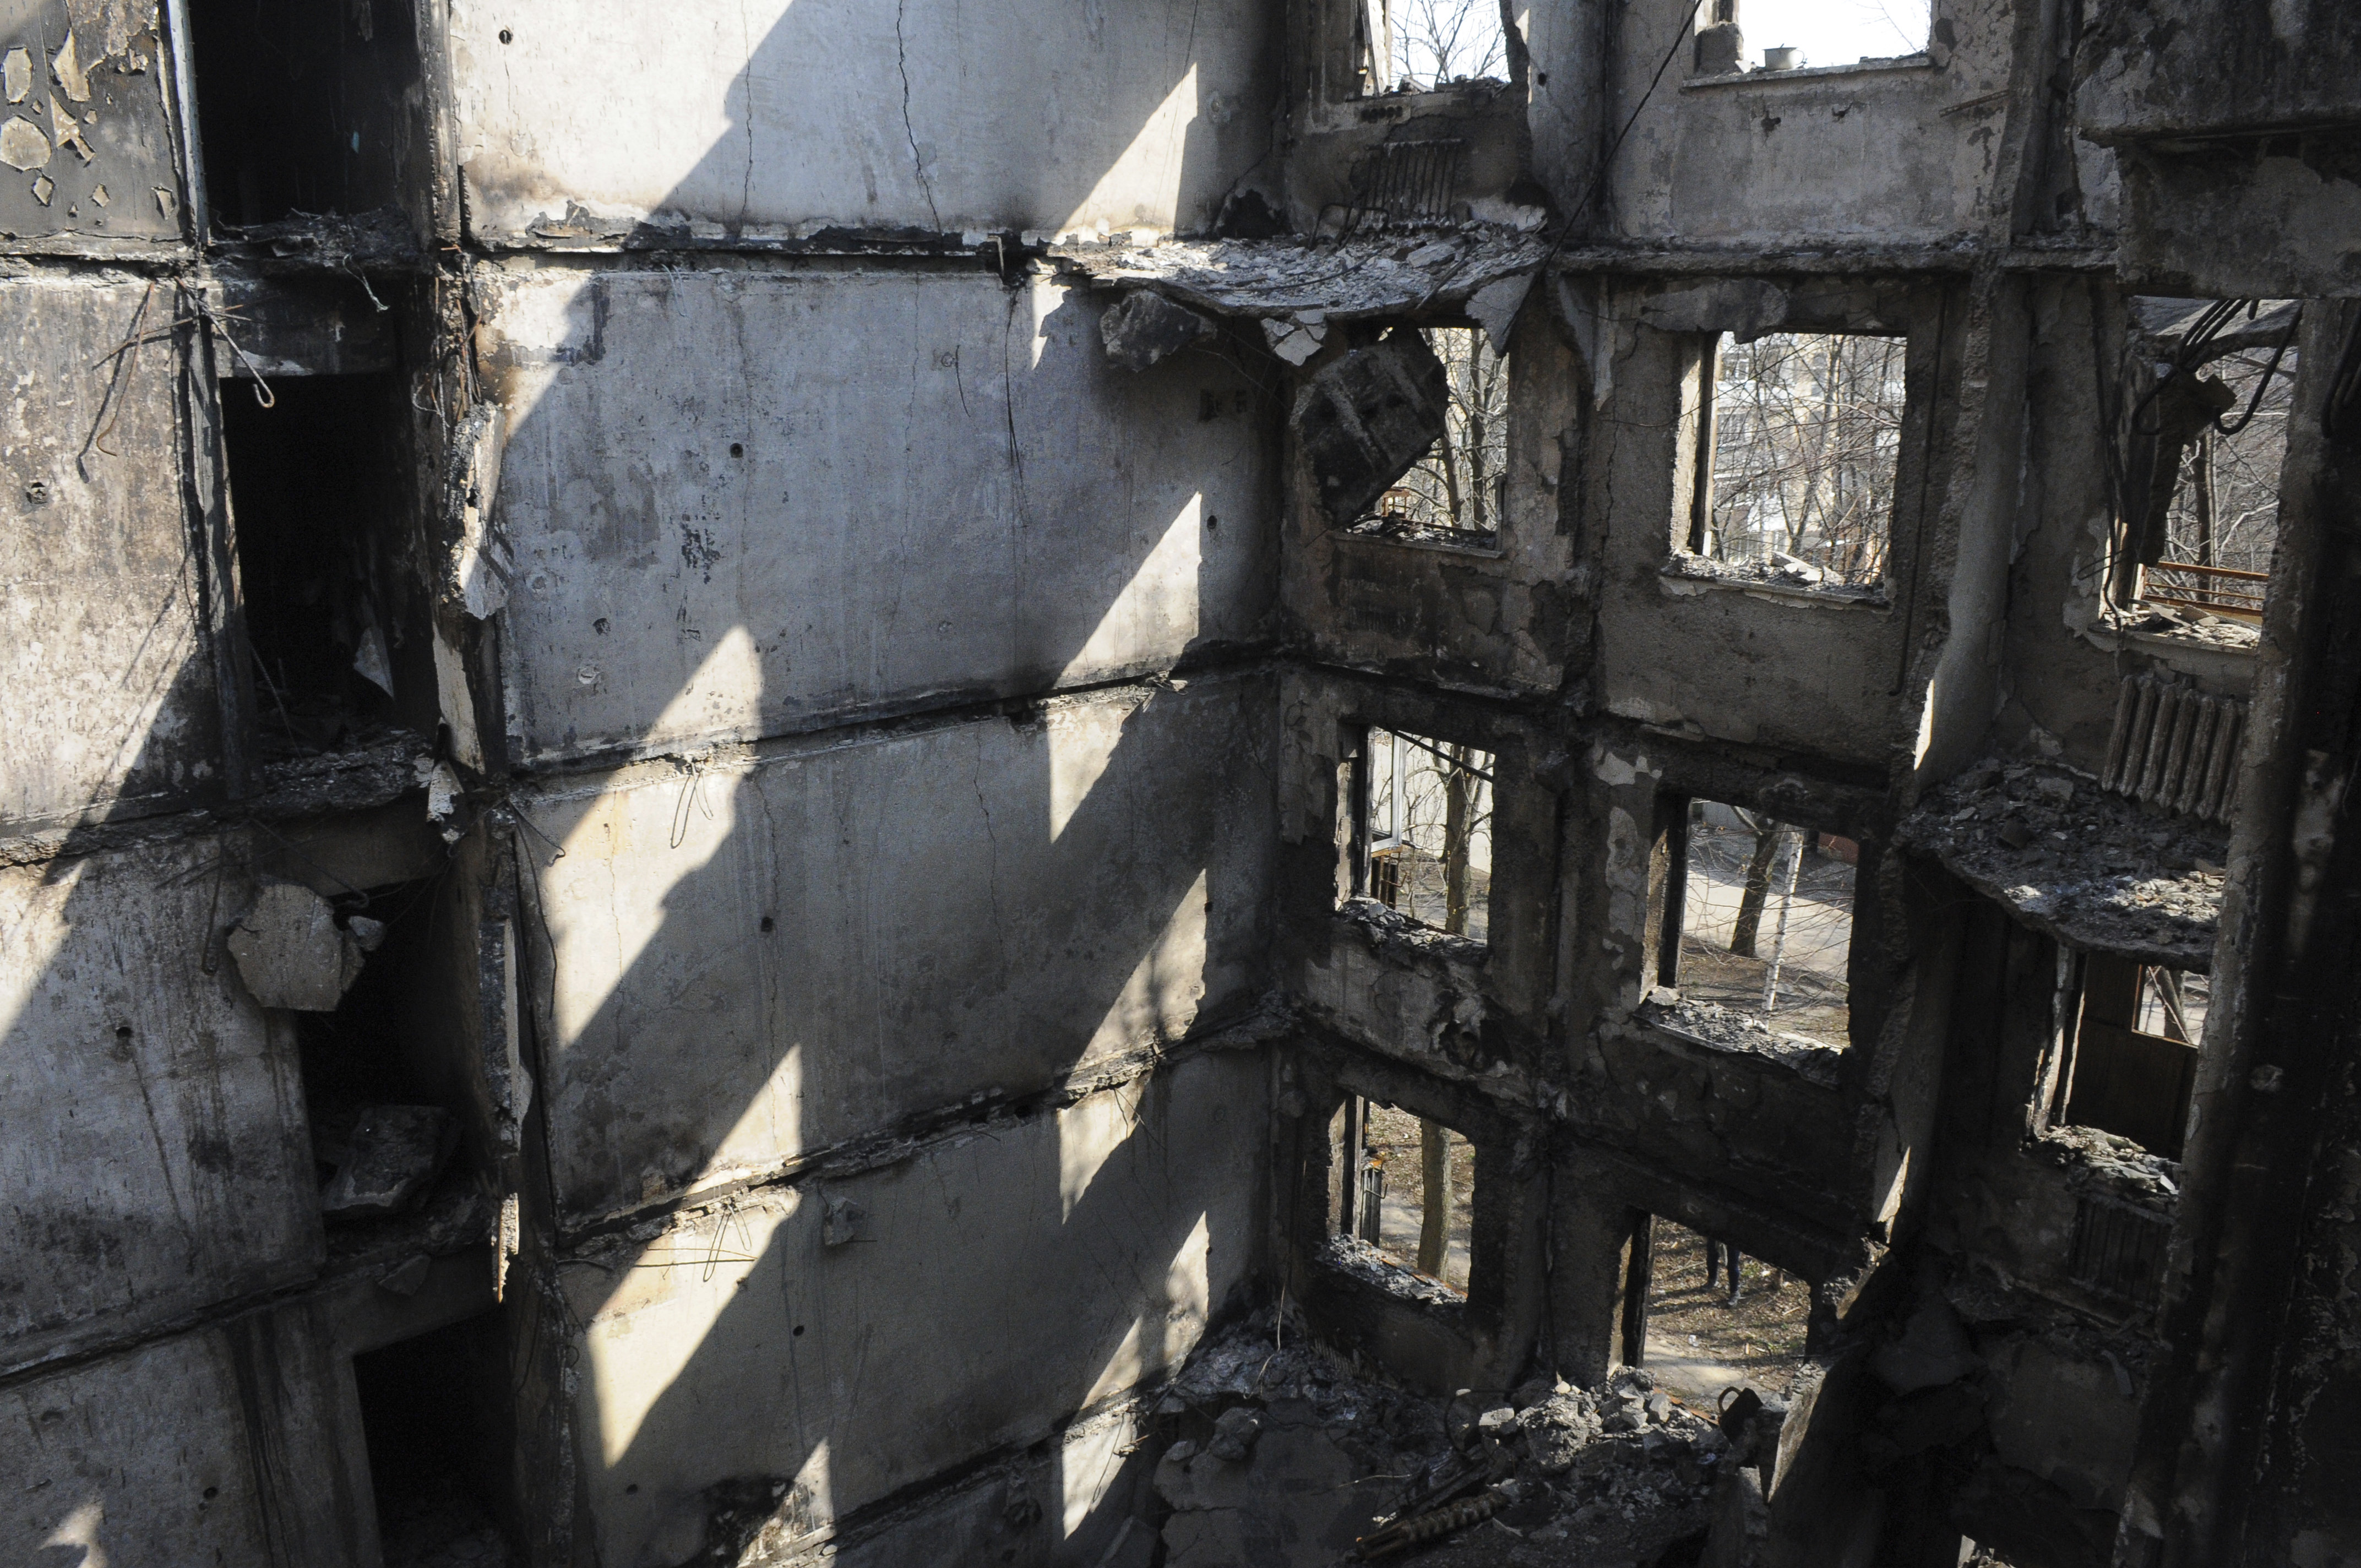 Със серия от мощни експлозии разтърсили тази нощ украинския югозападен